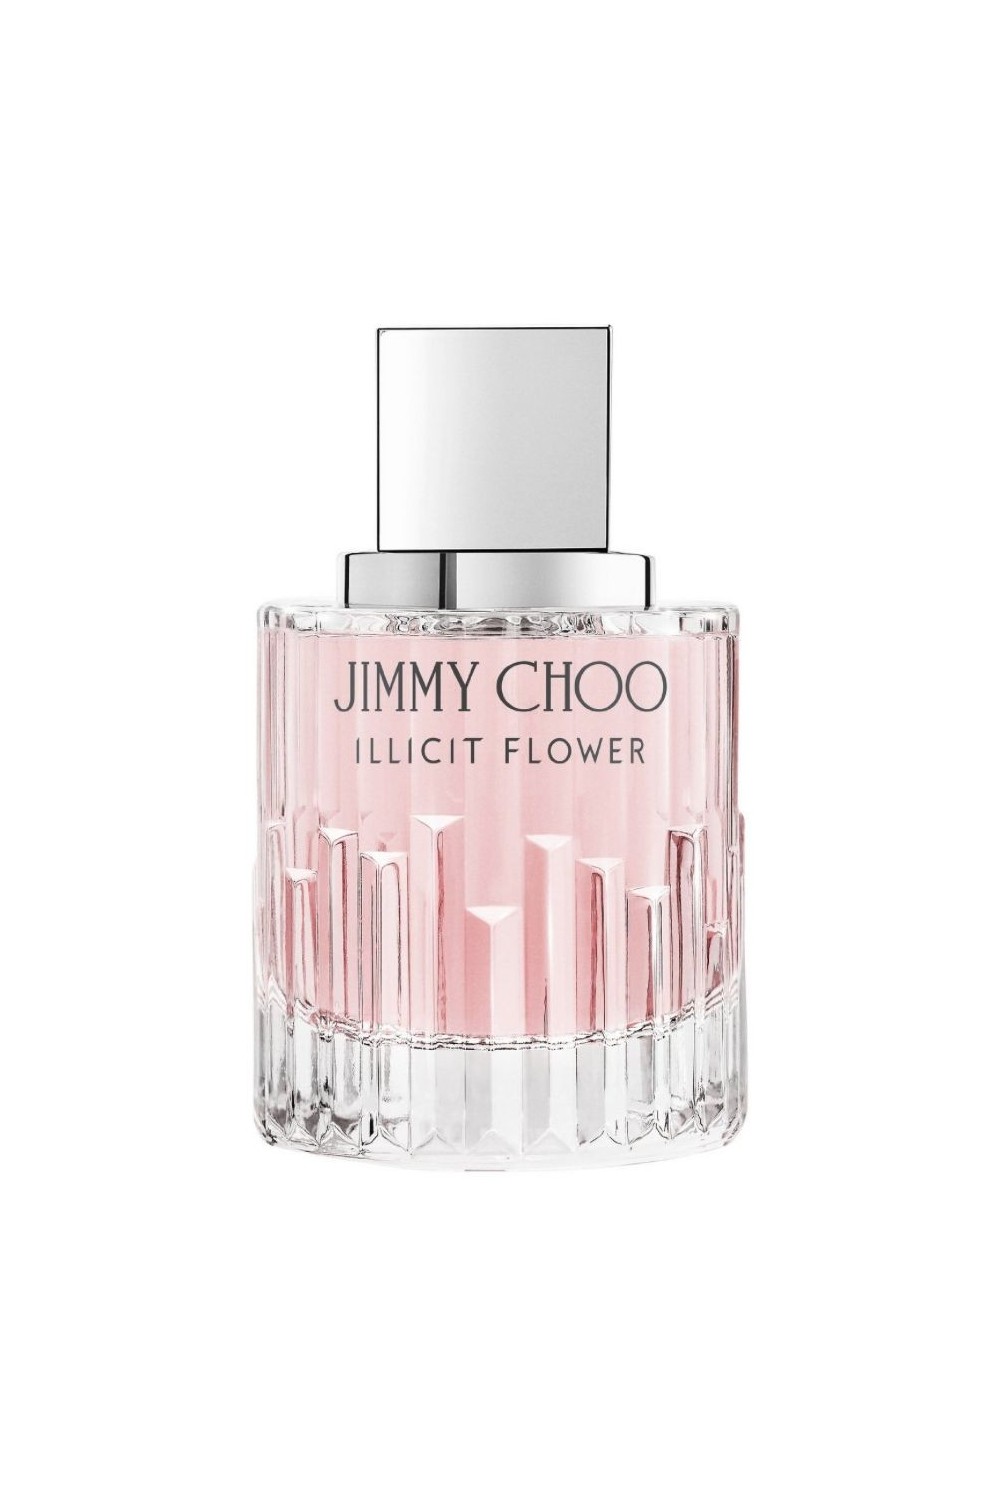 Jimmy Choo Illicit Flower Eau De Toilette Spray 100ml